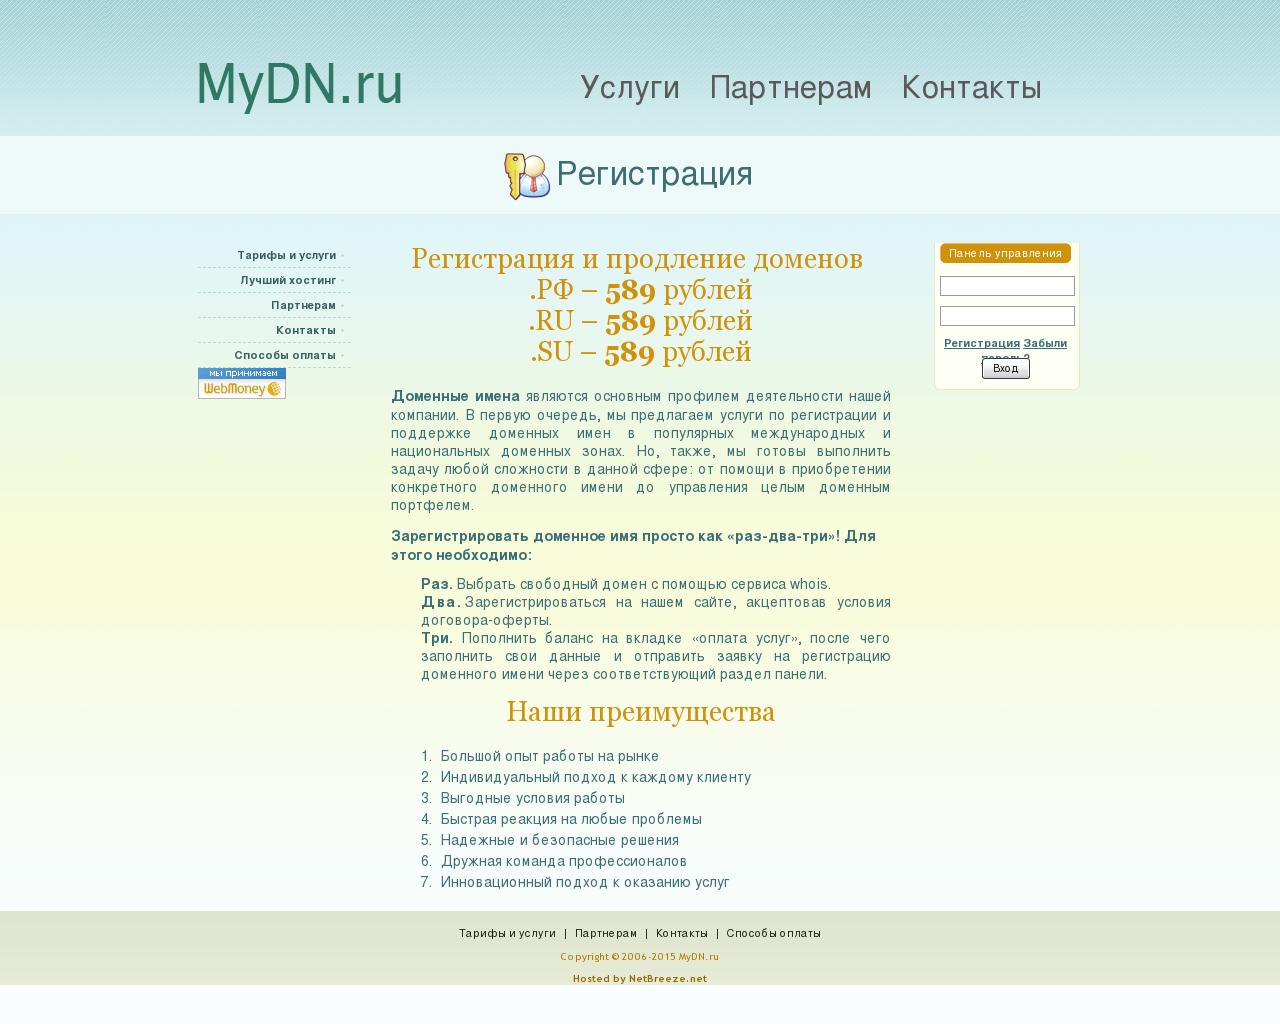 Изображение сайта mydn.ru в разрешении 1280x1024